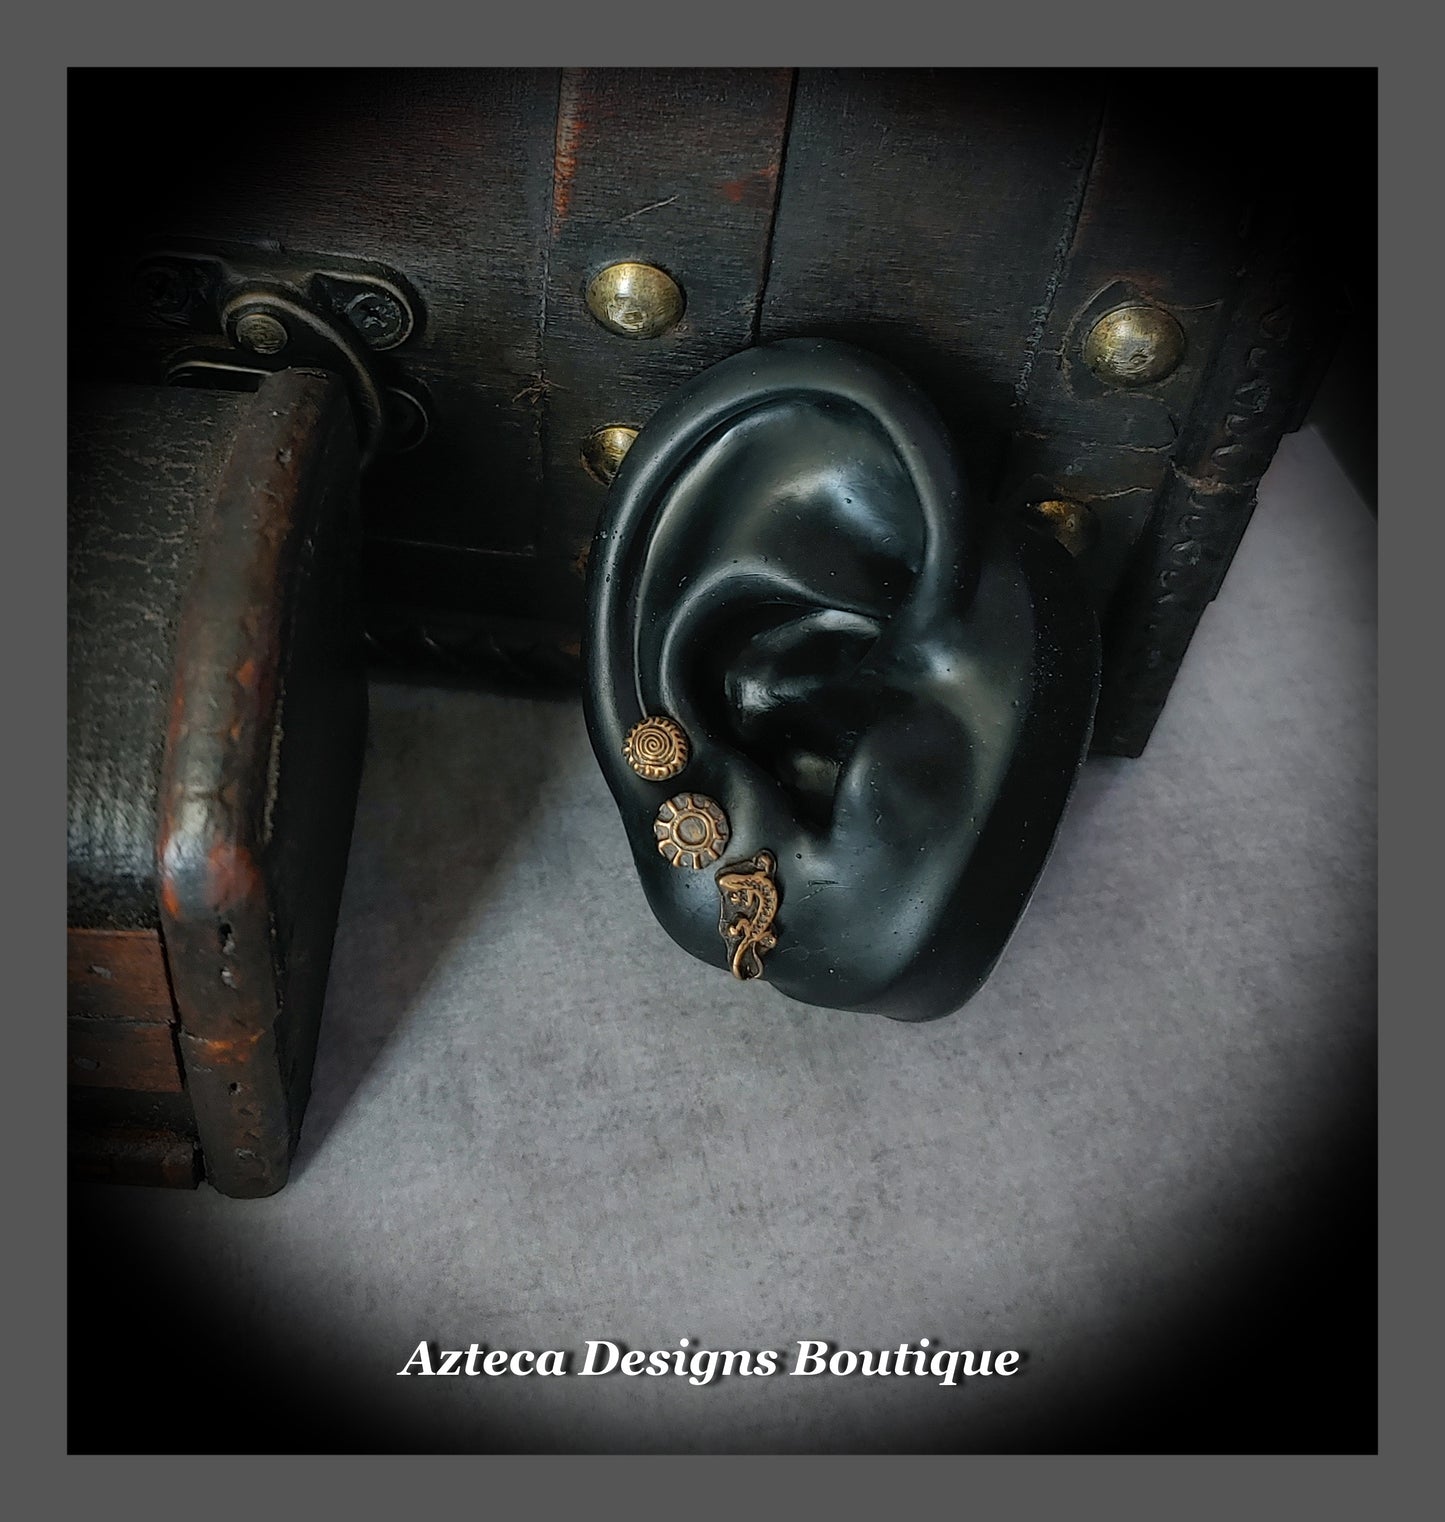 Bronze Lizard + Sterling Silver Post Earrings